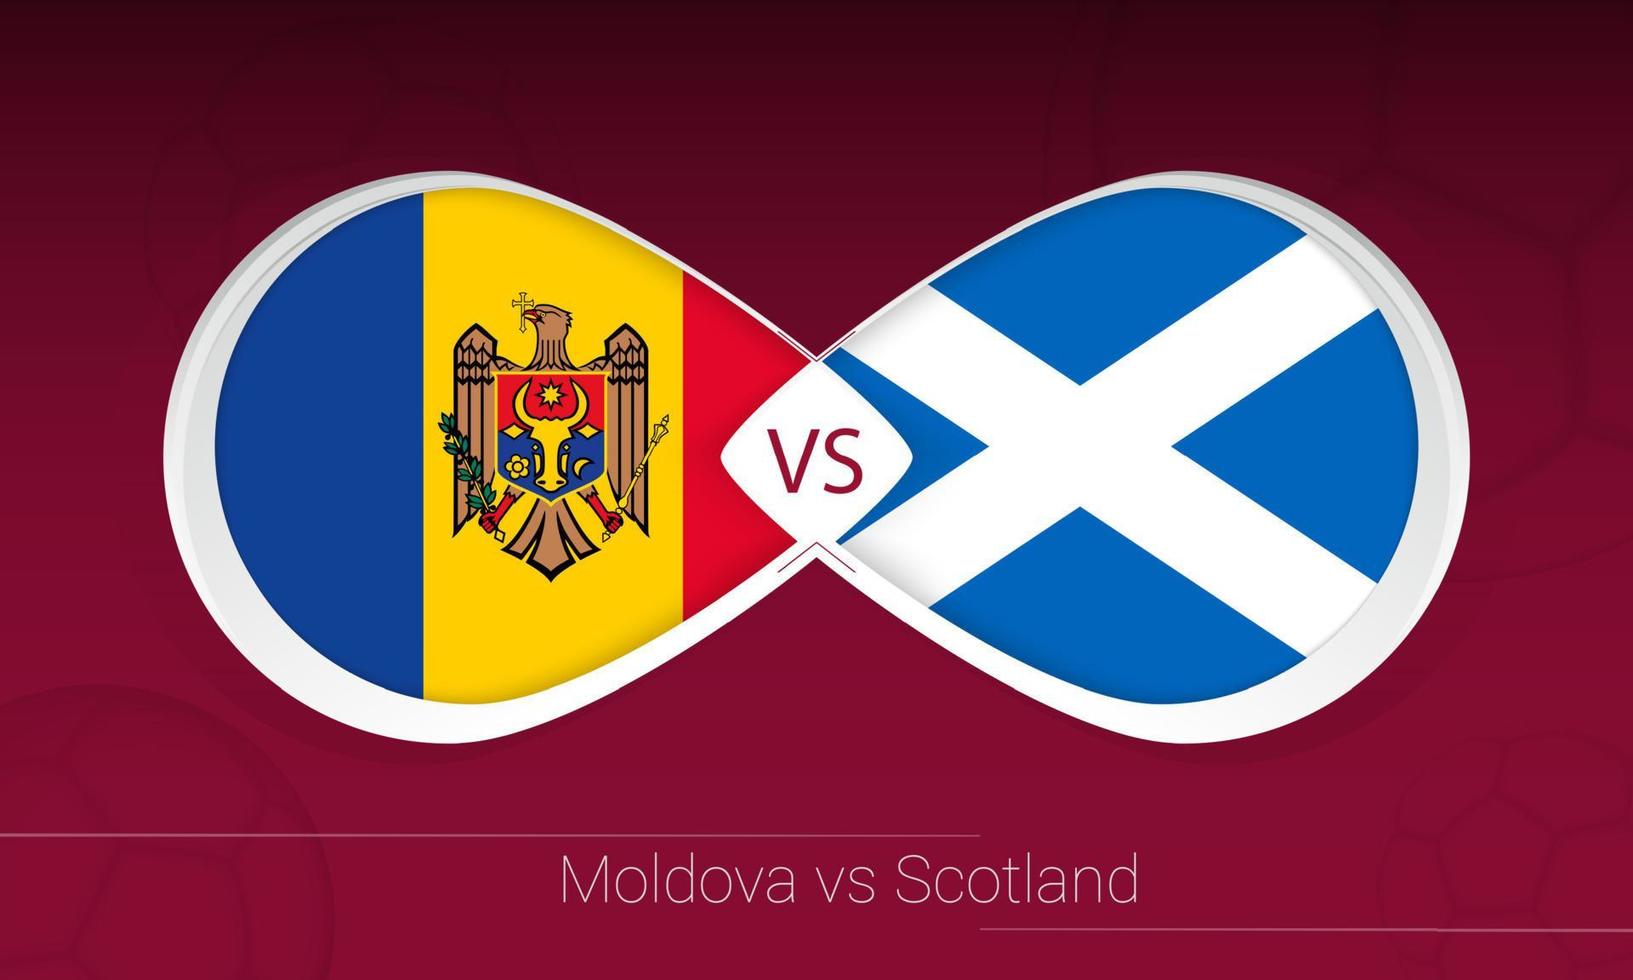 Moldavië vs Schotland in voetbalcompetitie, groep f. versus pictogram op voetbal achtergrond. vector